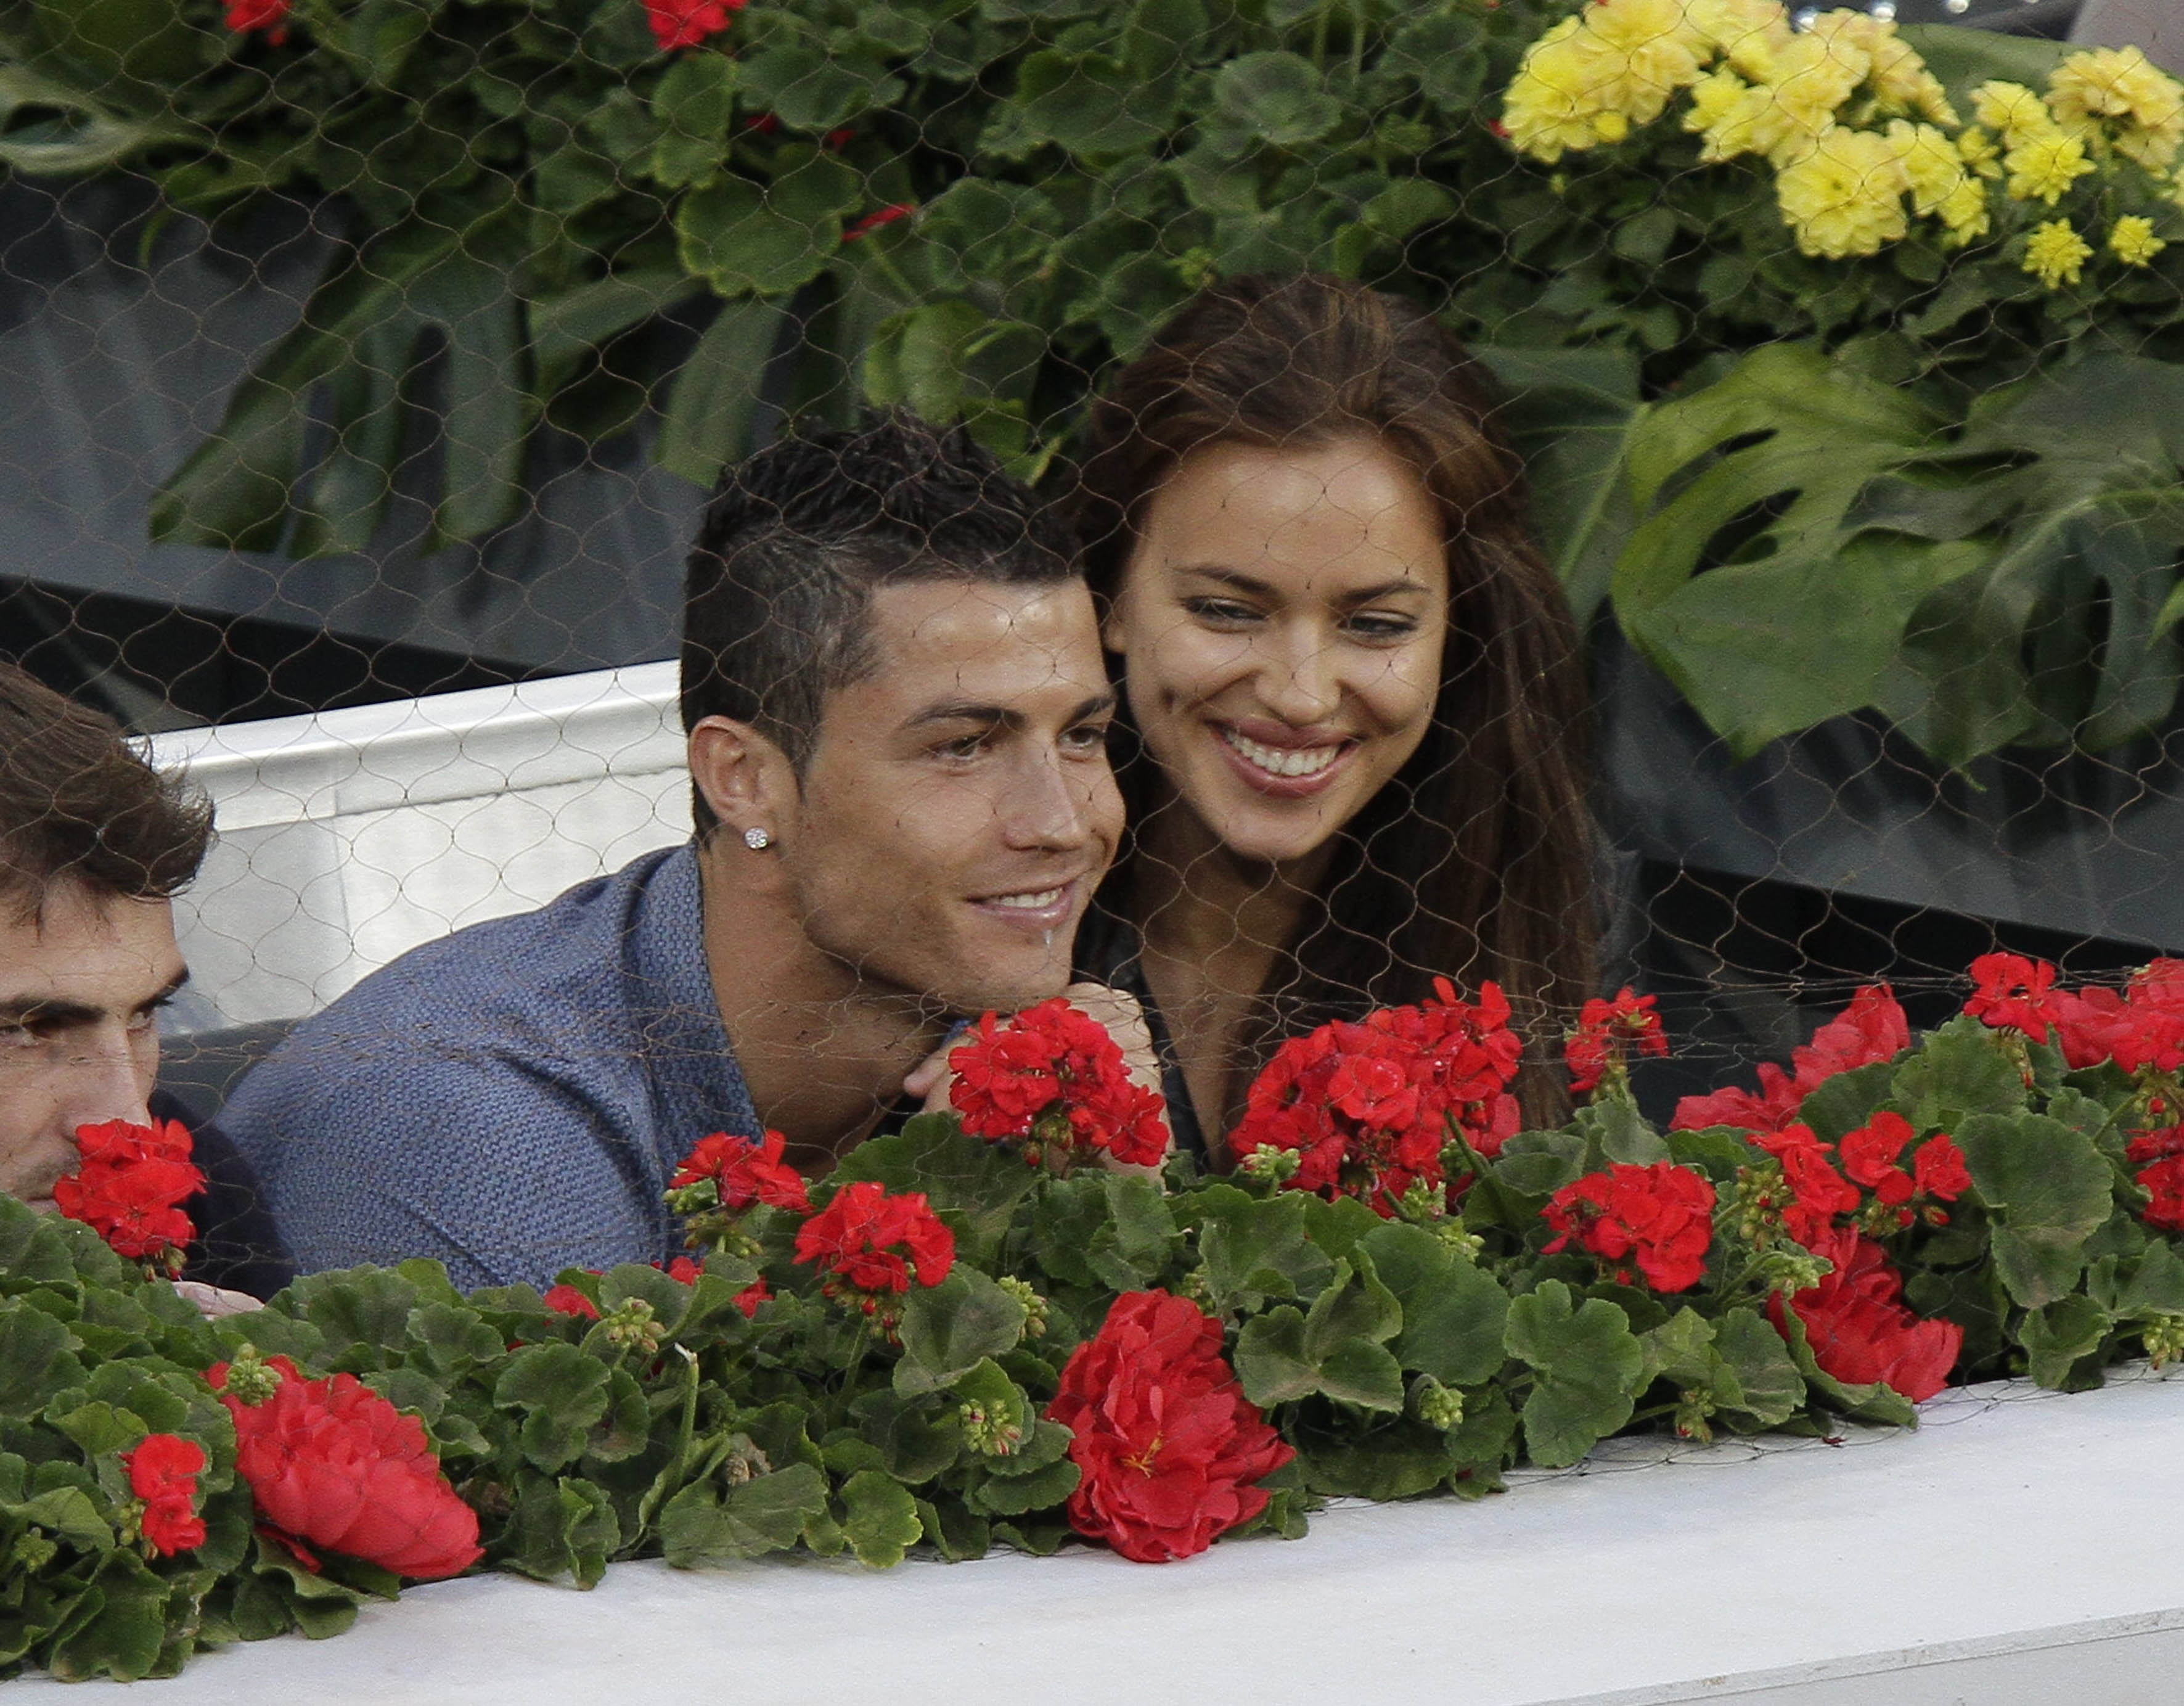 Cristiano Ronaldo började semestern redan i maj och tittade på tennis tillsammans med flickvännen Irina Shayk. Senare åkte paret till Madeira med Cristiano Jr.